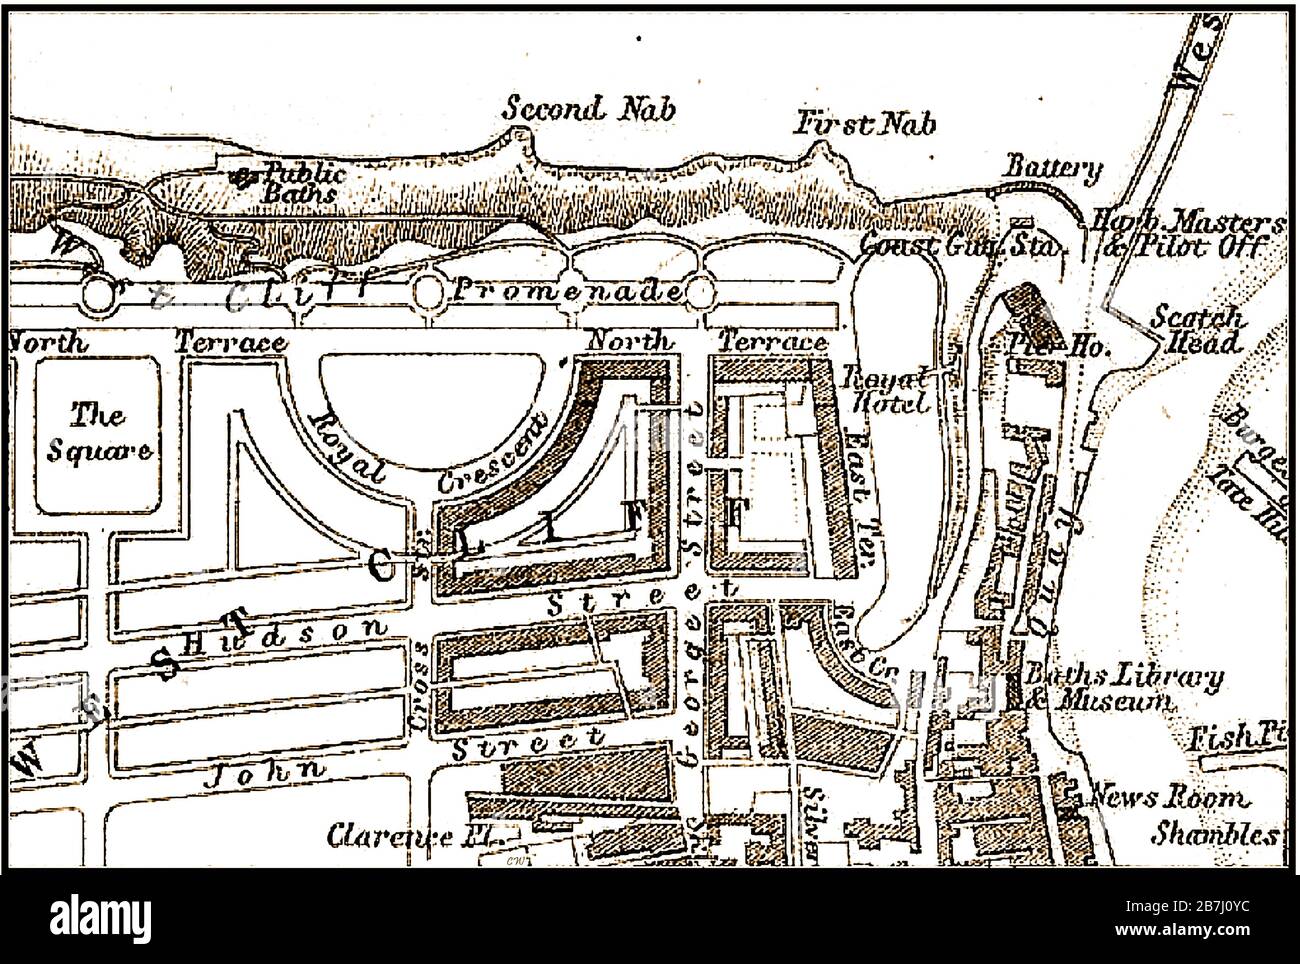 Eine Karte/ein Plan aus dem Jahr 1874 des West Cliff Areals von Whitby, North Yorkshire, England in viktorianischer Zeit, die eine Umrisse von Gebäuden zeigt, einige noch zu vollenden. Stockfoto